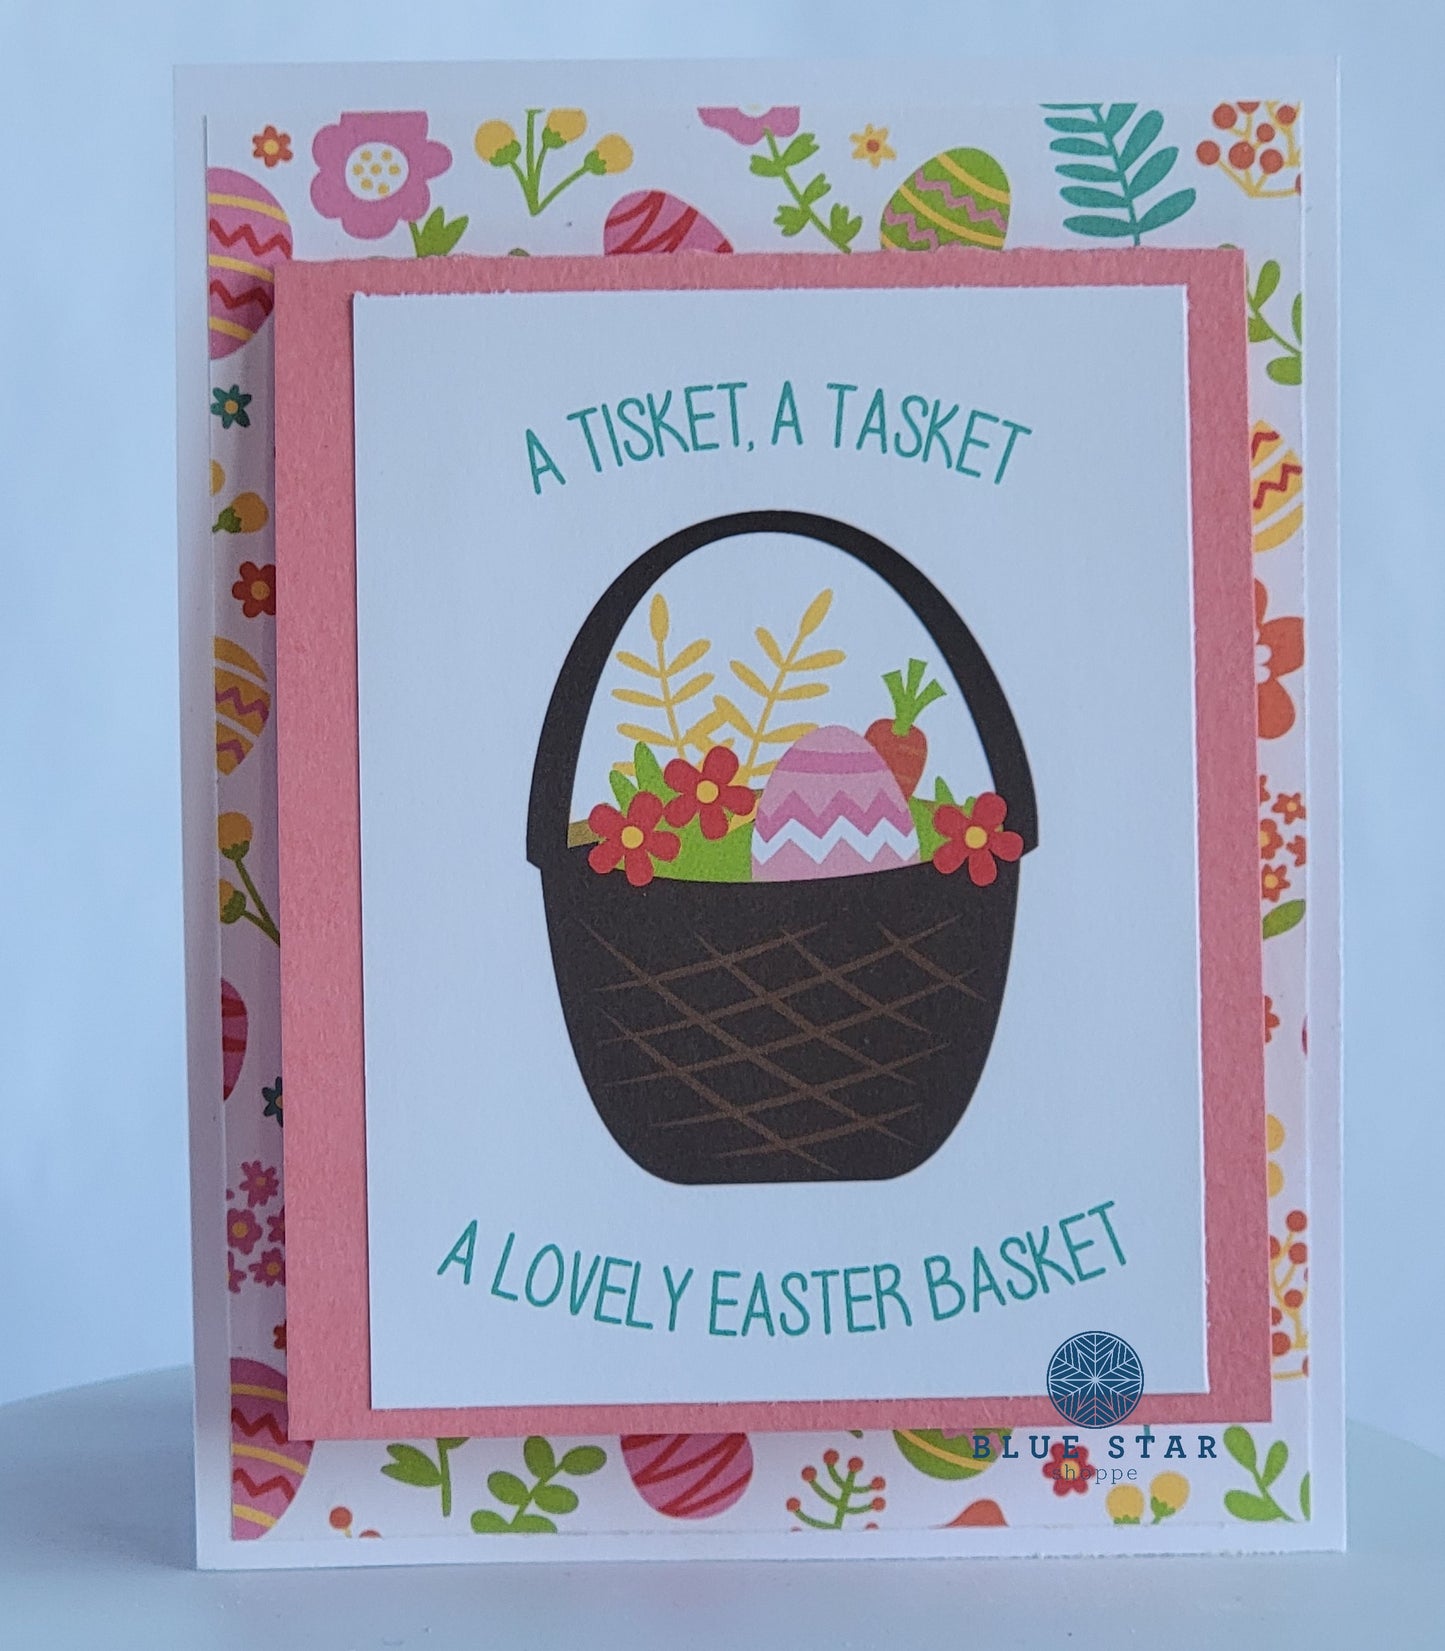 A Tisket, A Tasket A Lovely Easter Basket